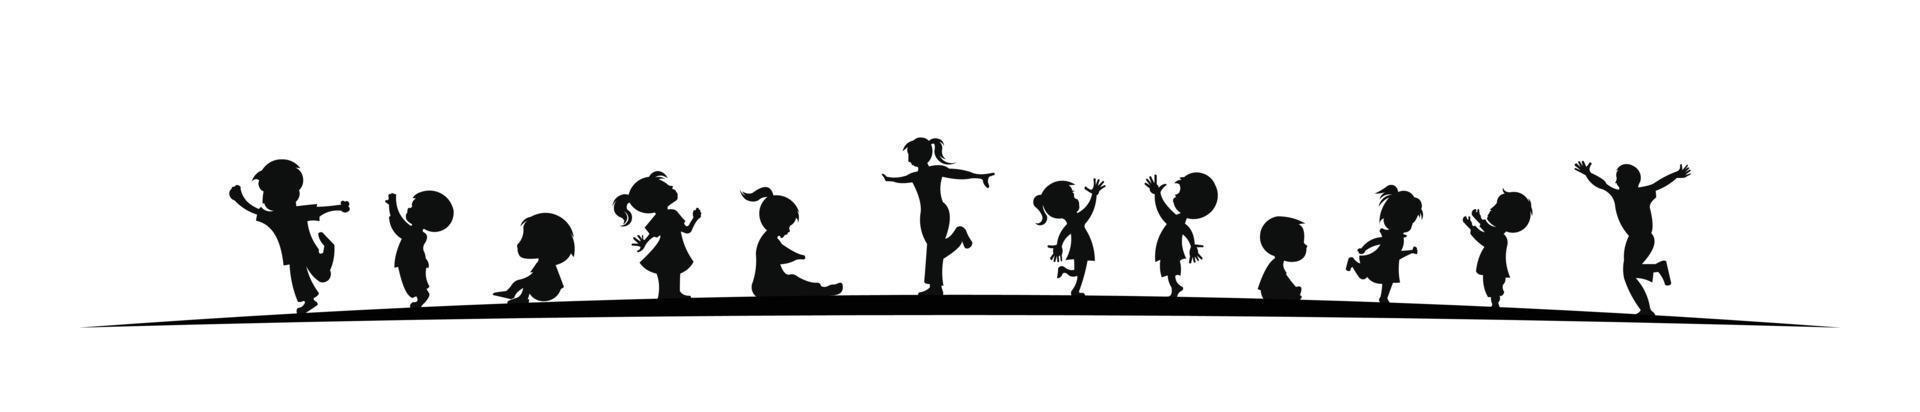 silhouette vectorielle d'enfants, collection d'icônes de silhouettes d'enfants garçons et filles mis en illustration vectorielle vecteur